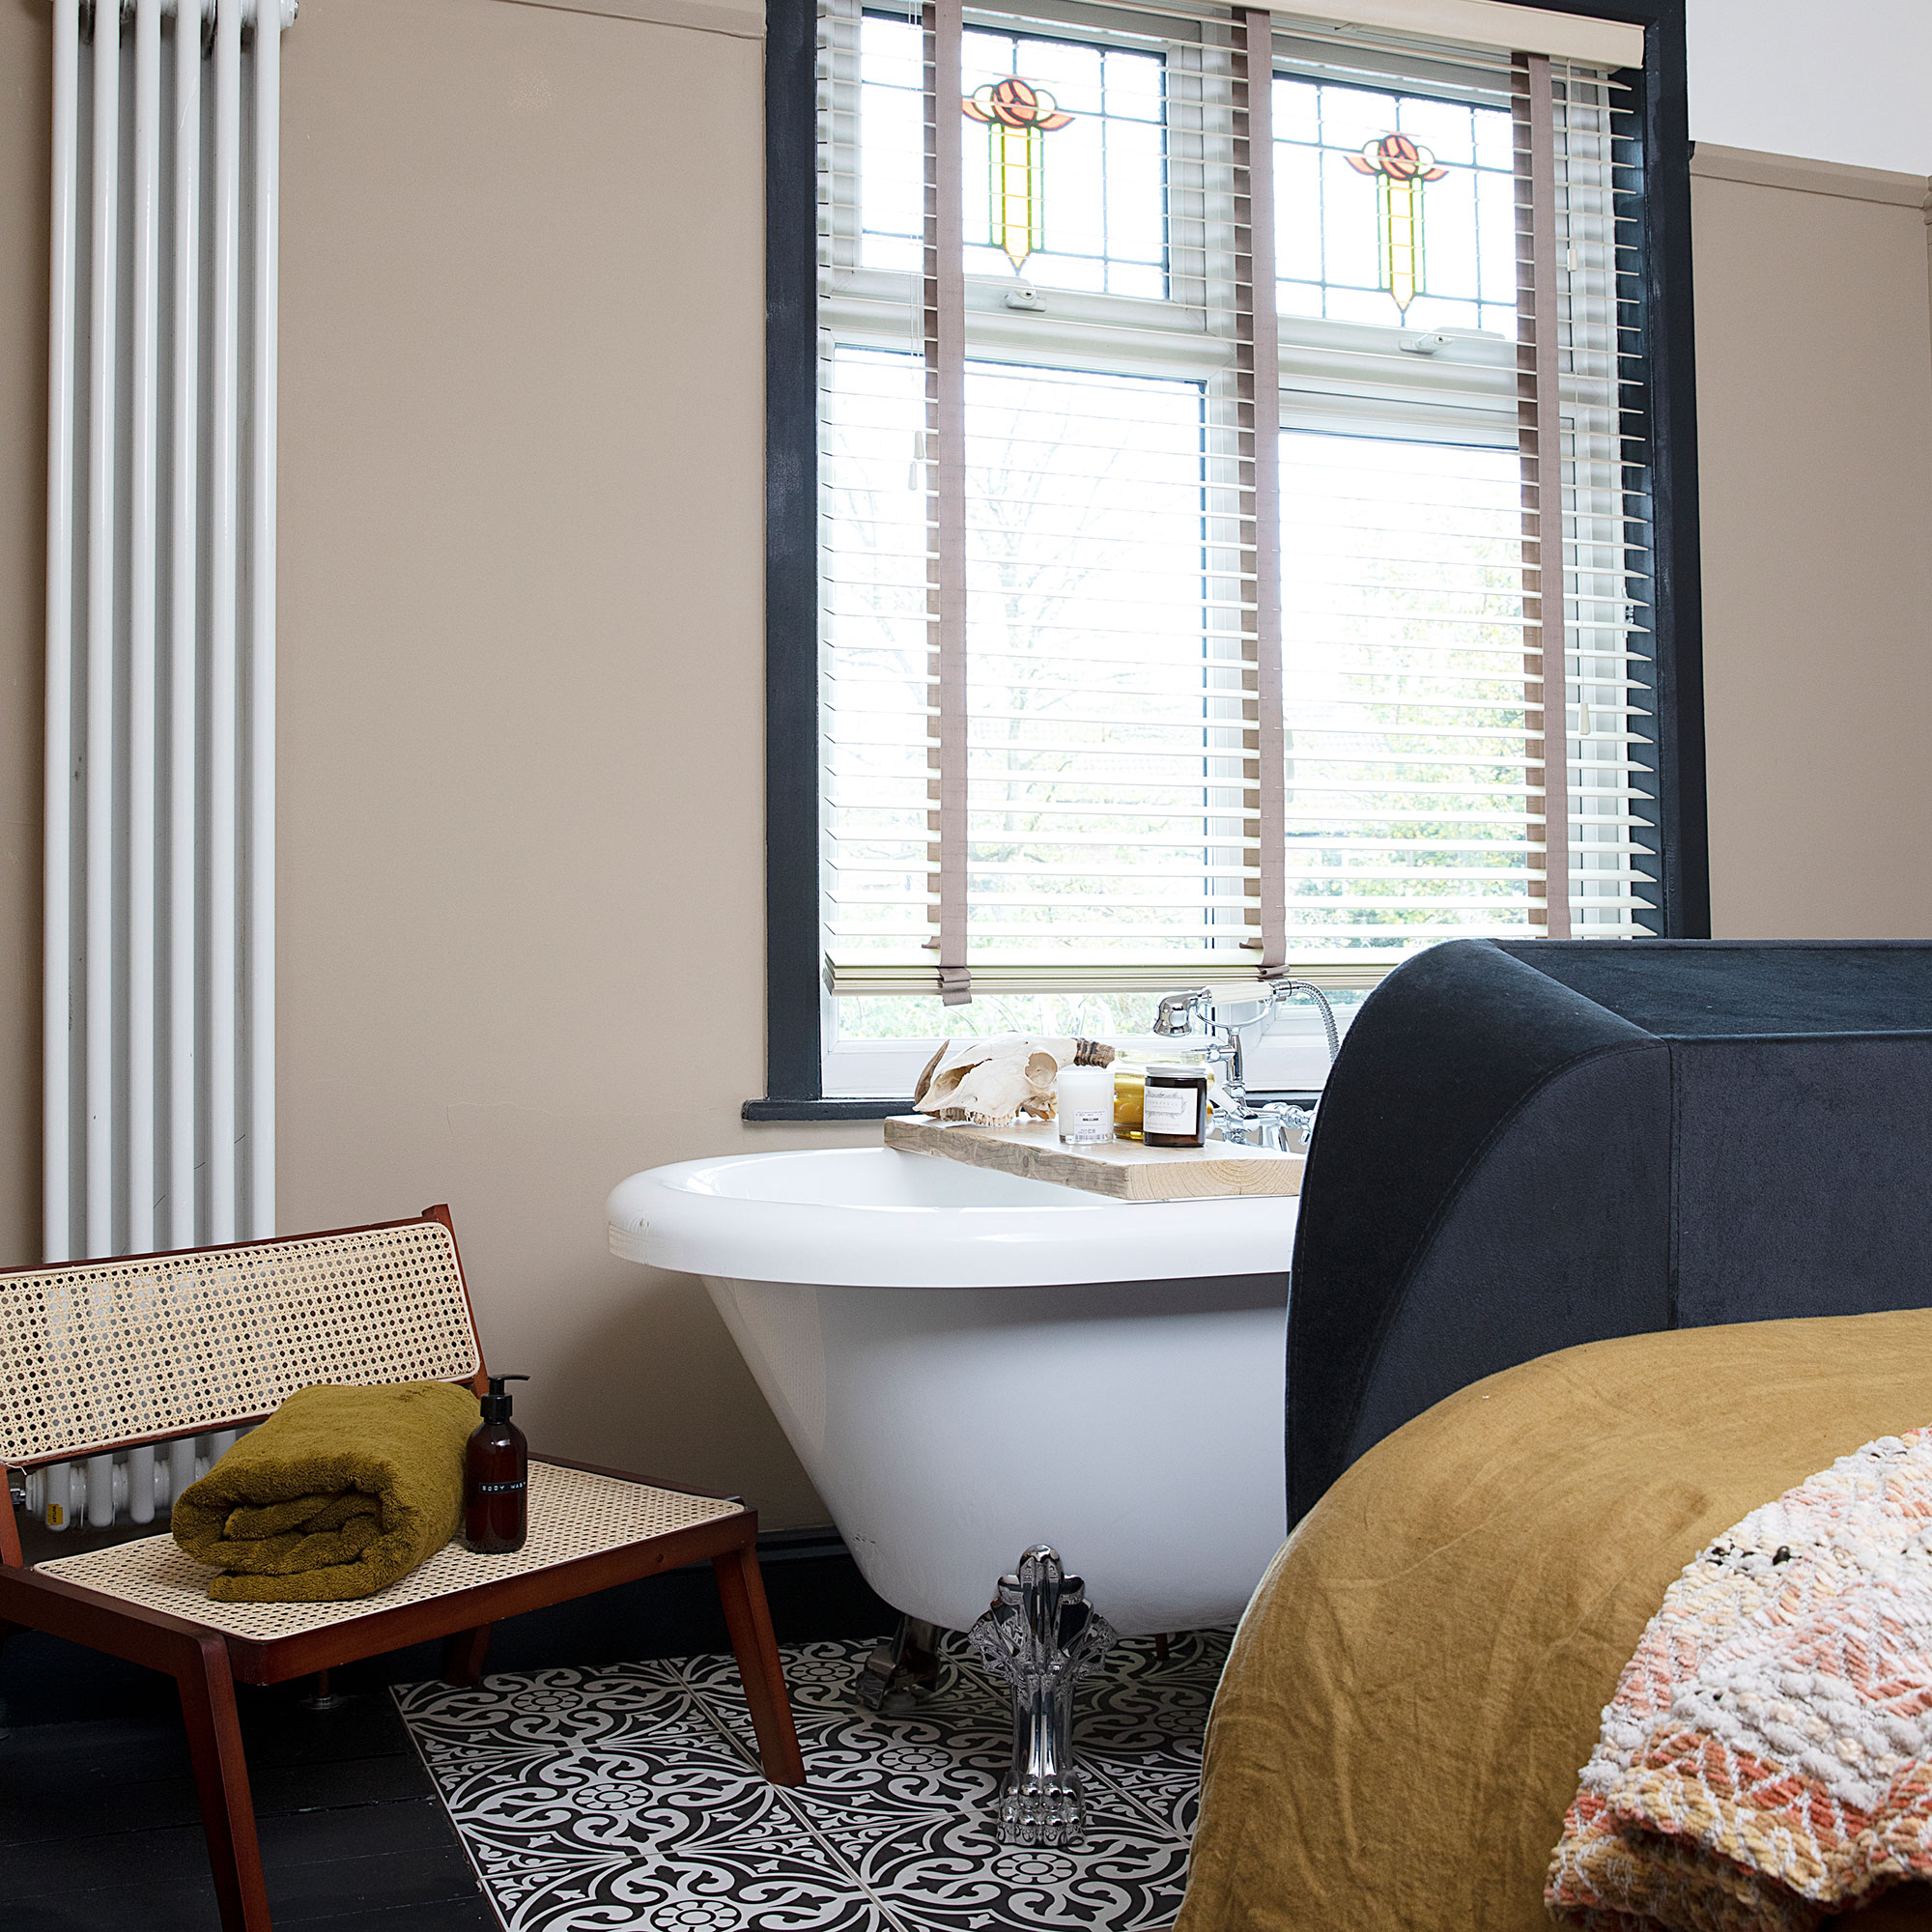 Kamar tidur netral dengan bak mandi berdiri bebas, jendela kaca patri, tempat tidur berlapis biru, lantai keramik